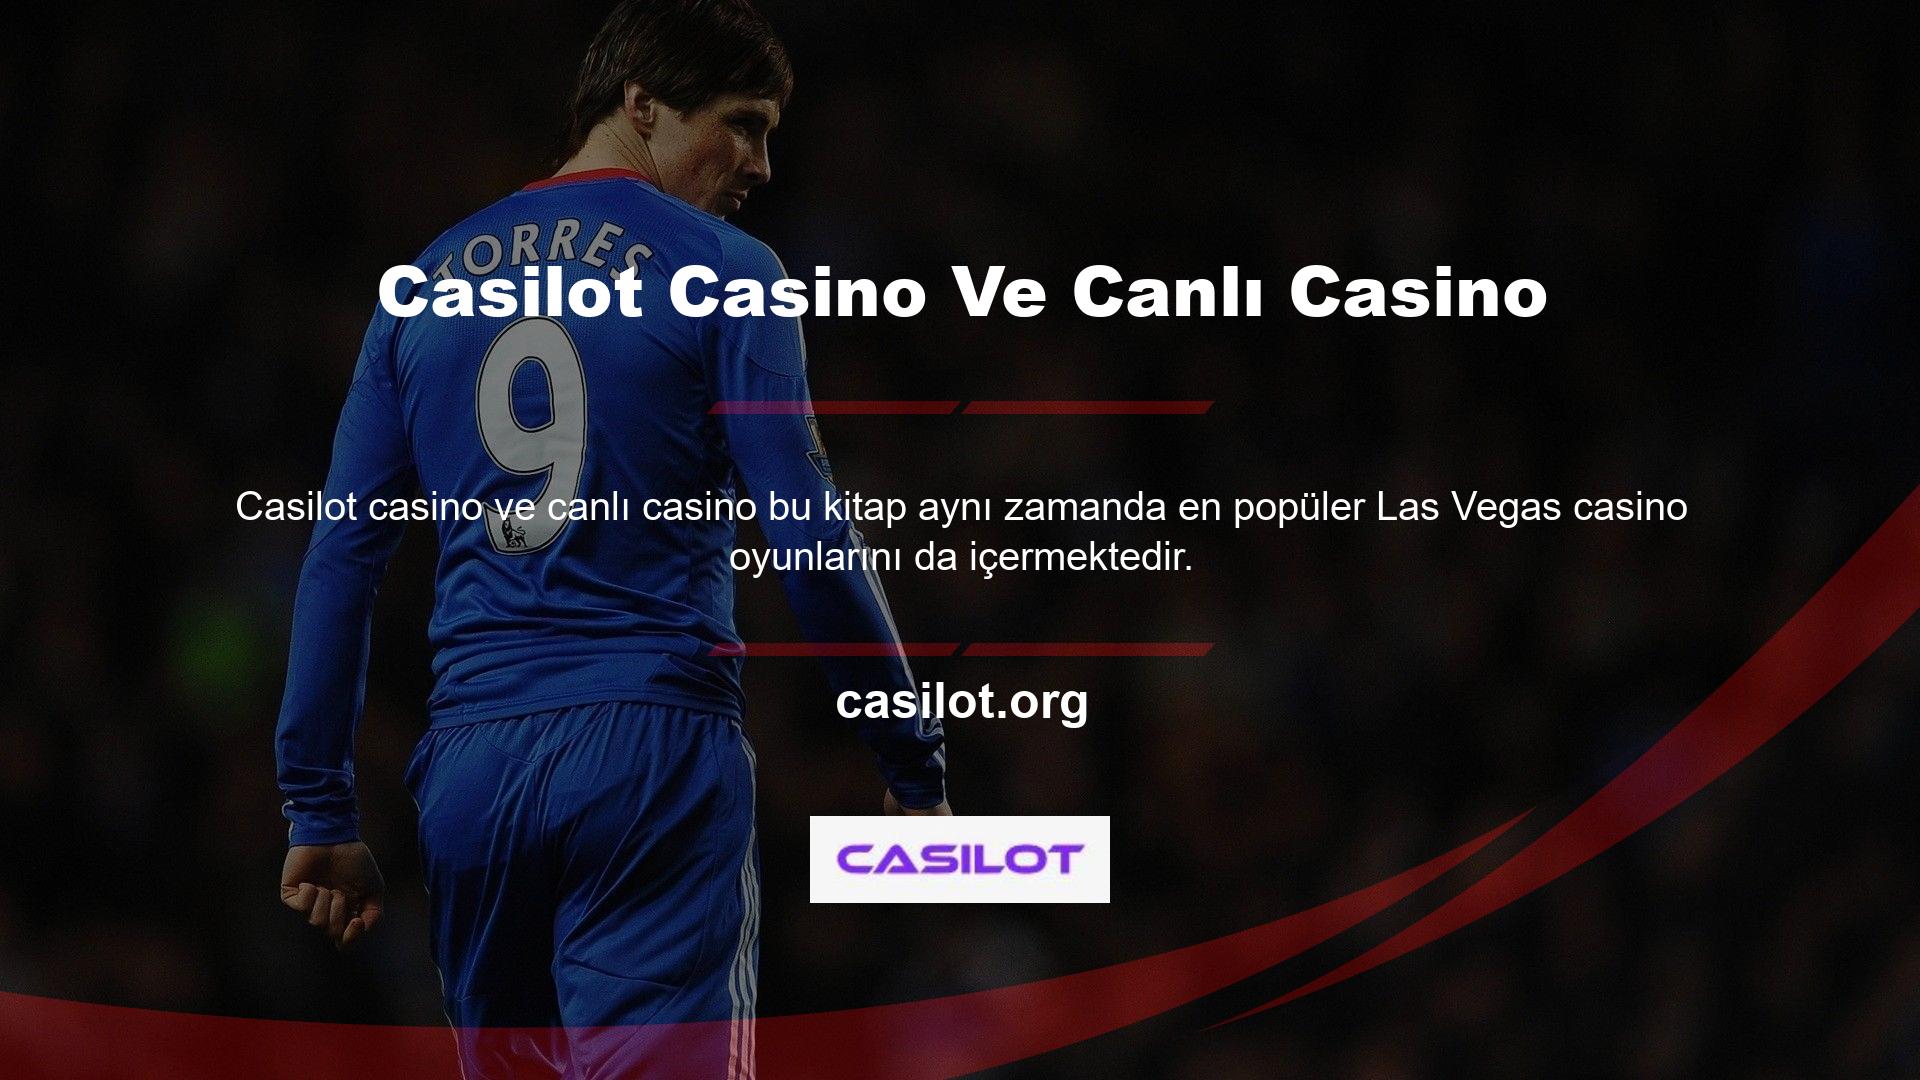 Casino bölümü slot oyunlarının sanal versiyonlarını sunmaktadır